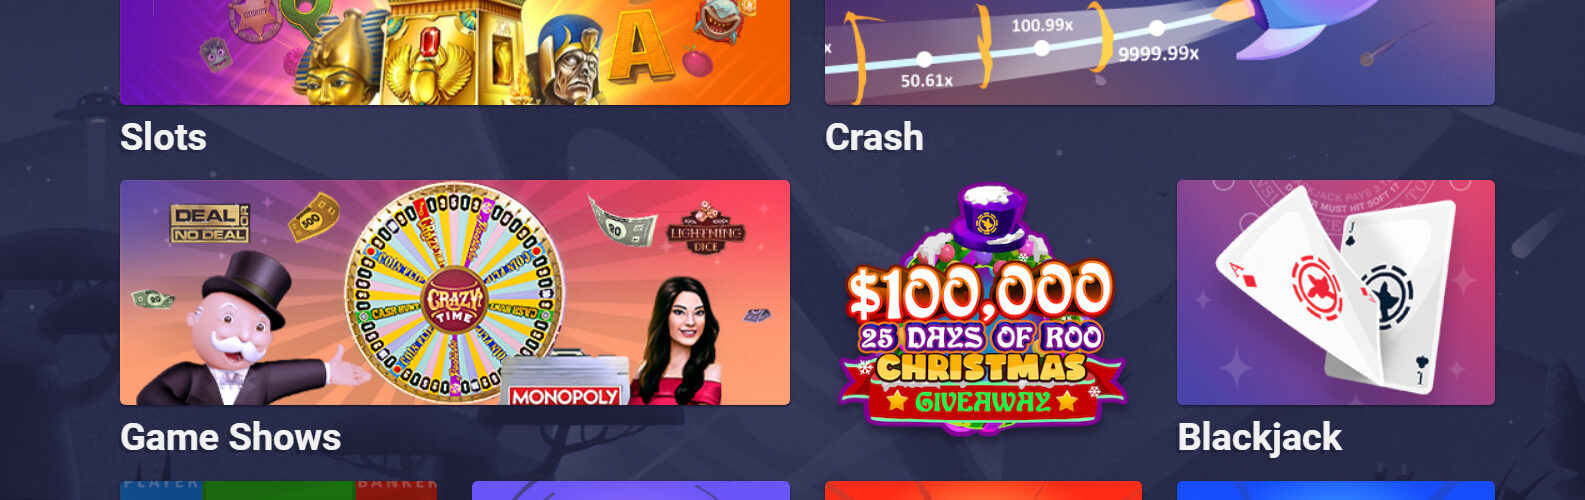 Roobet.com Casino